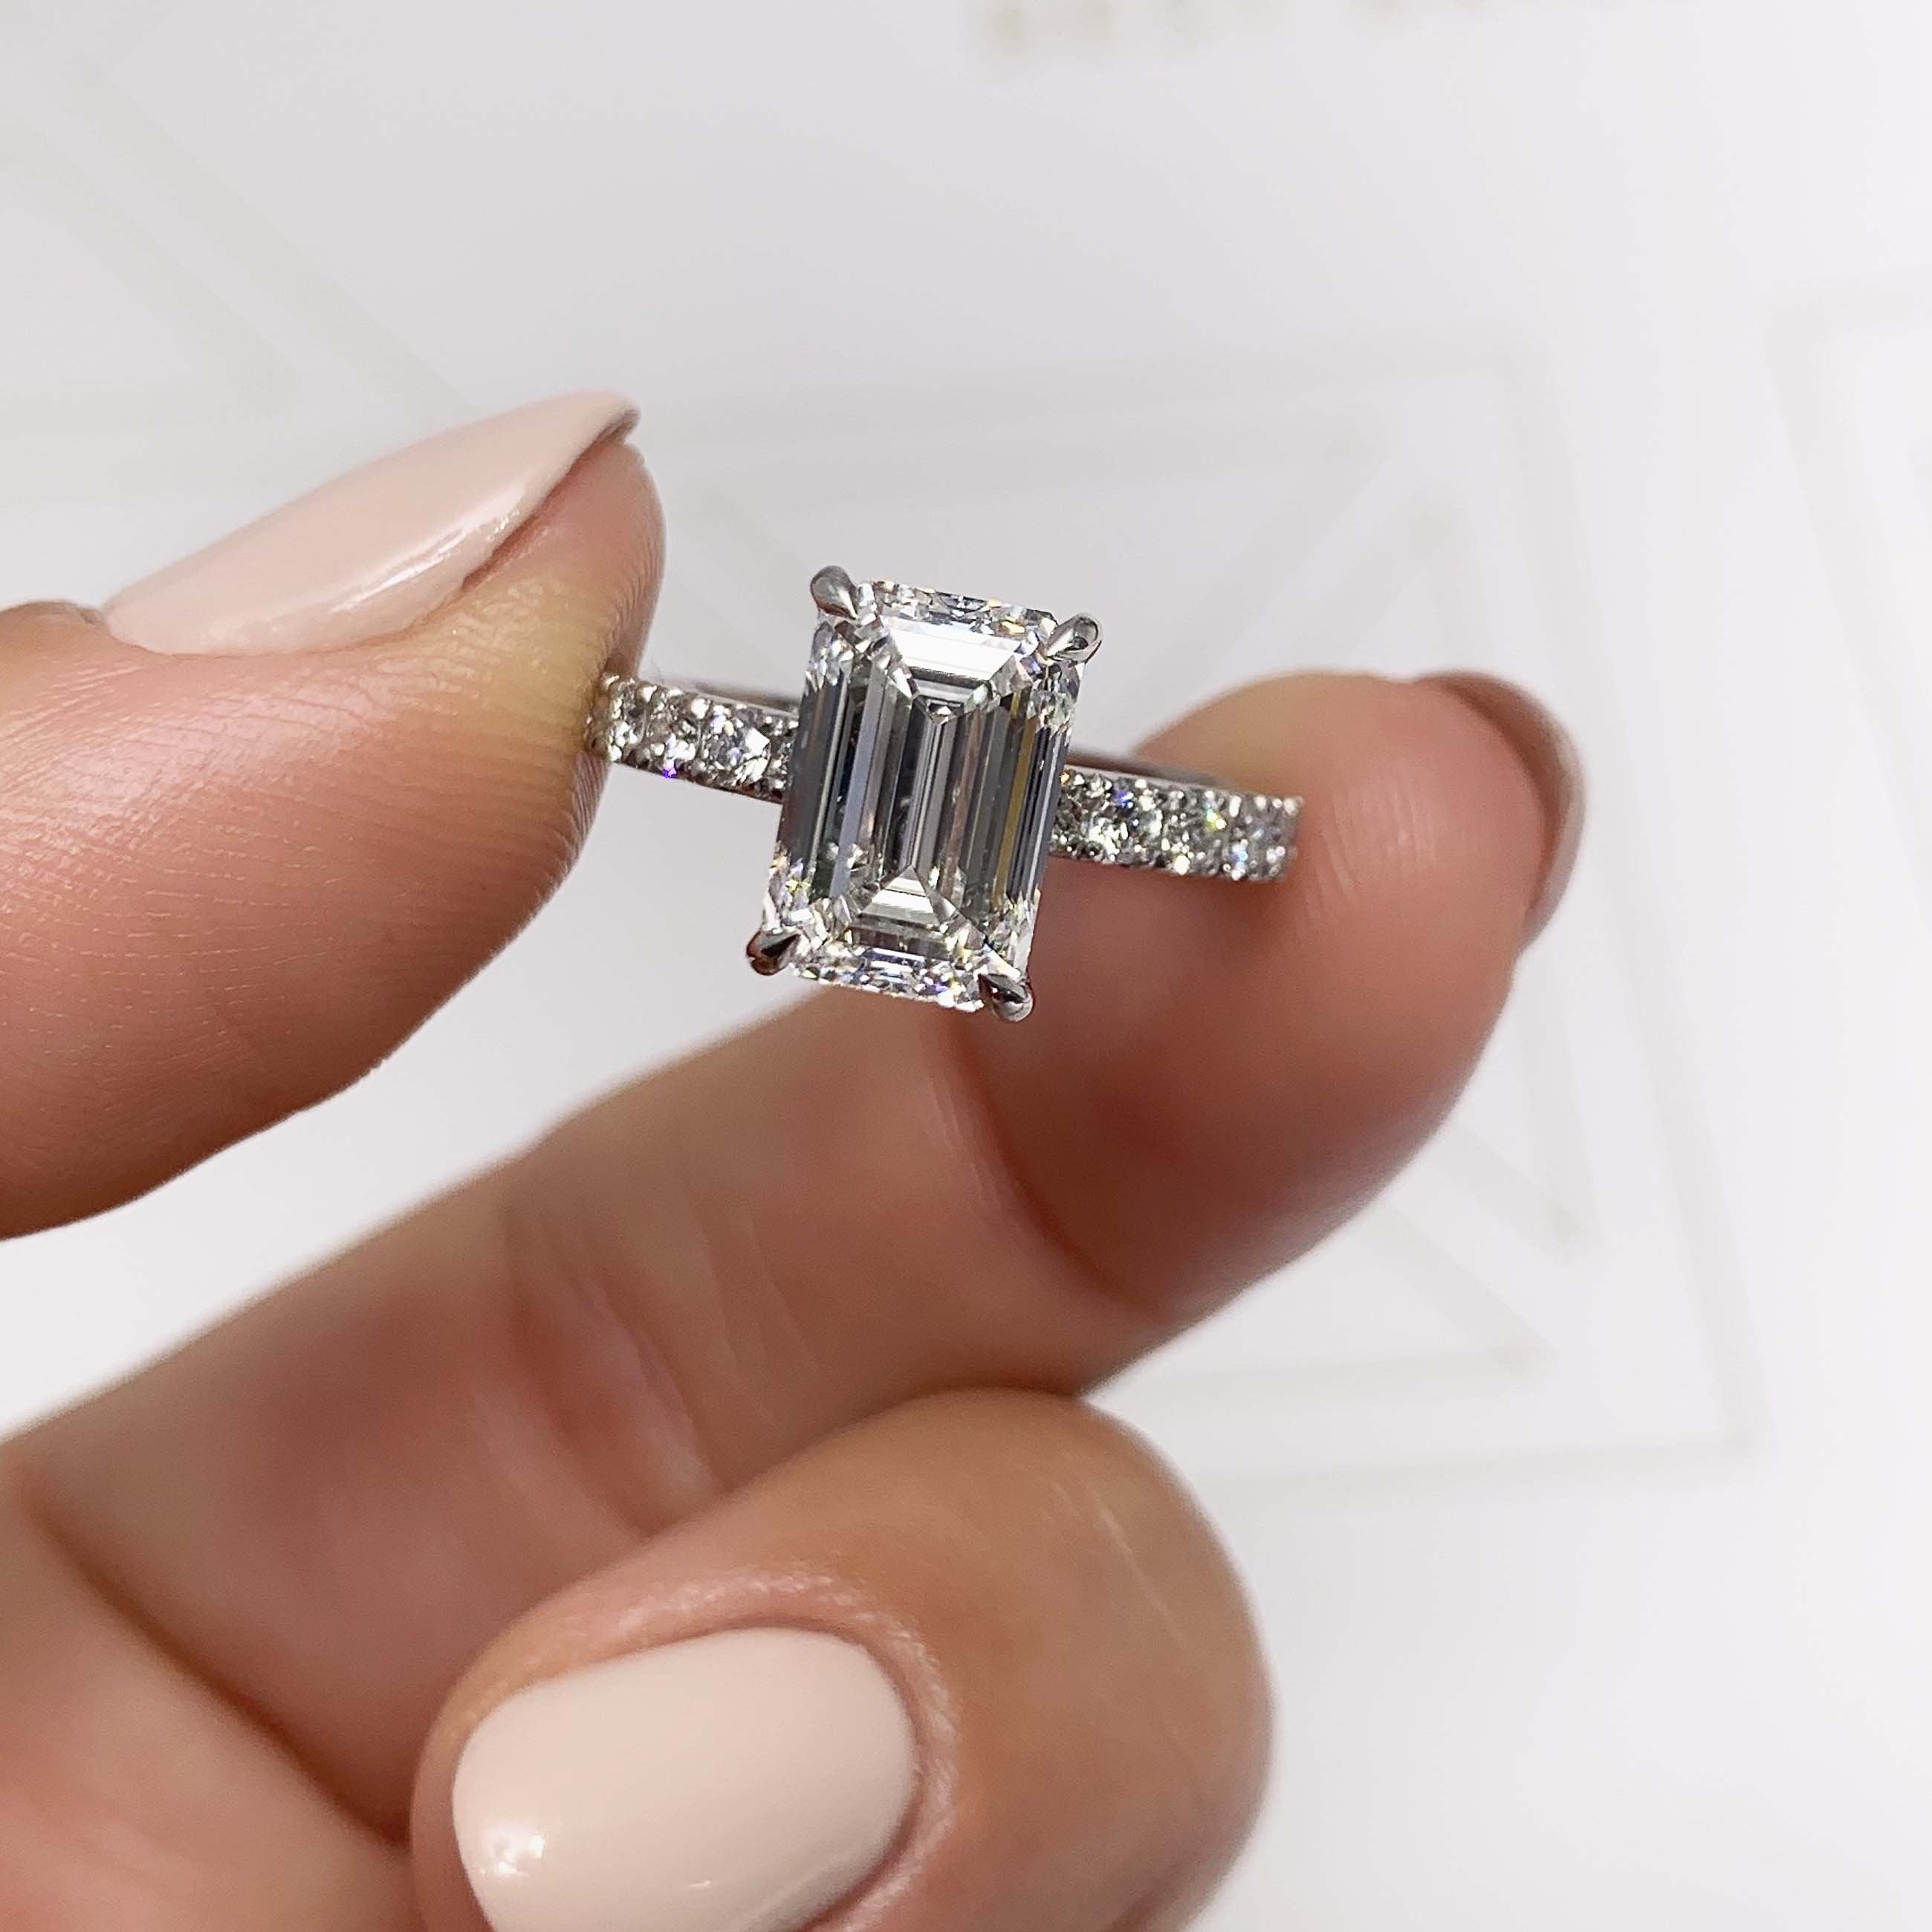 Royal Lab Grown Diamond Ring   (3.5 Carat) -14K White Gold